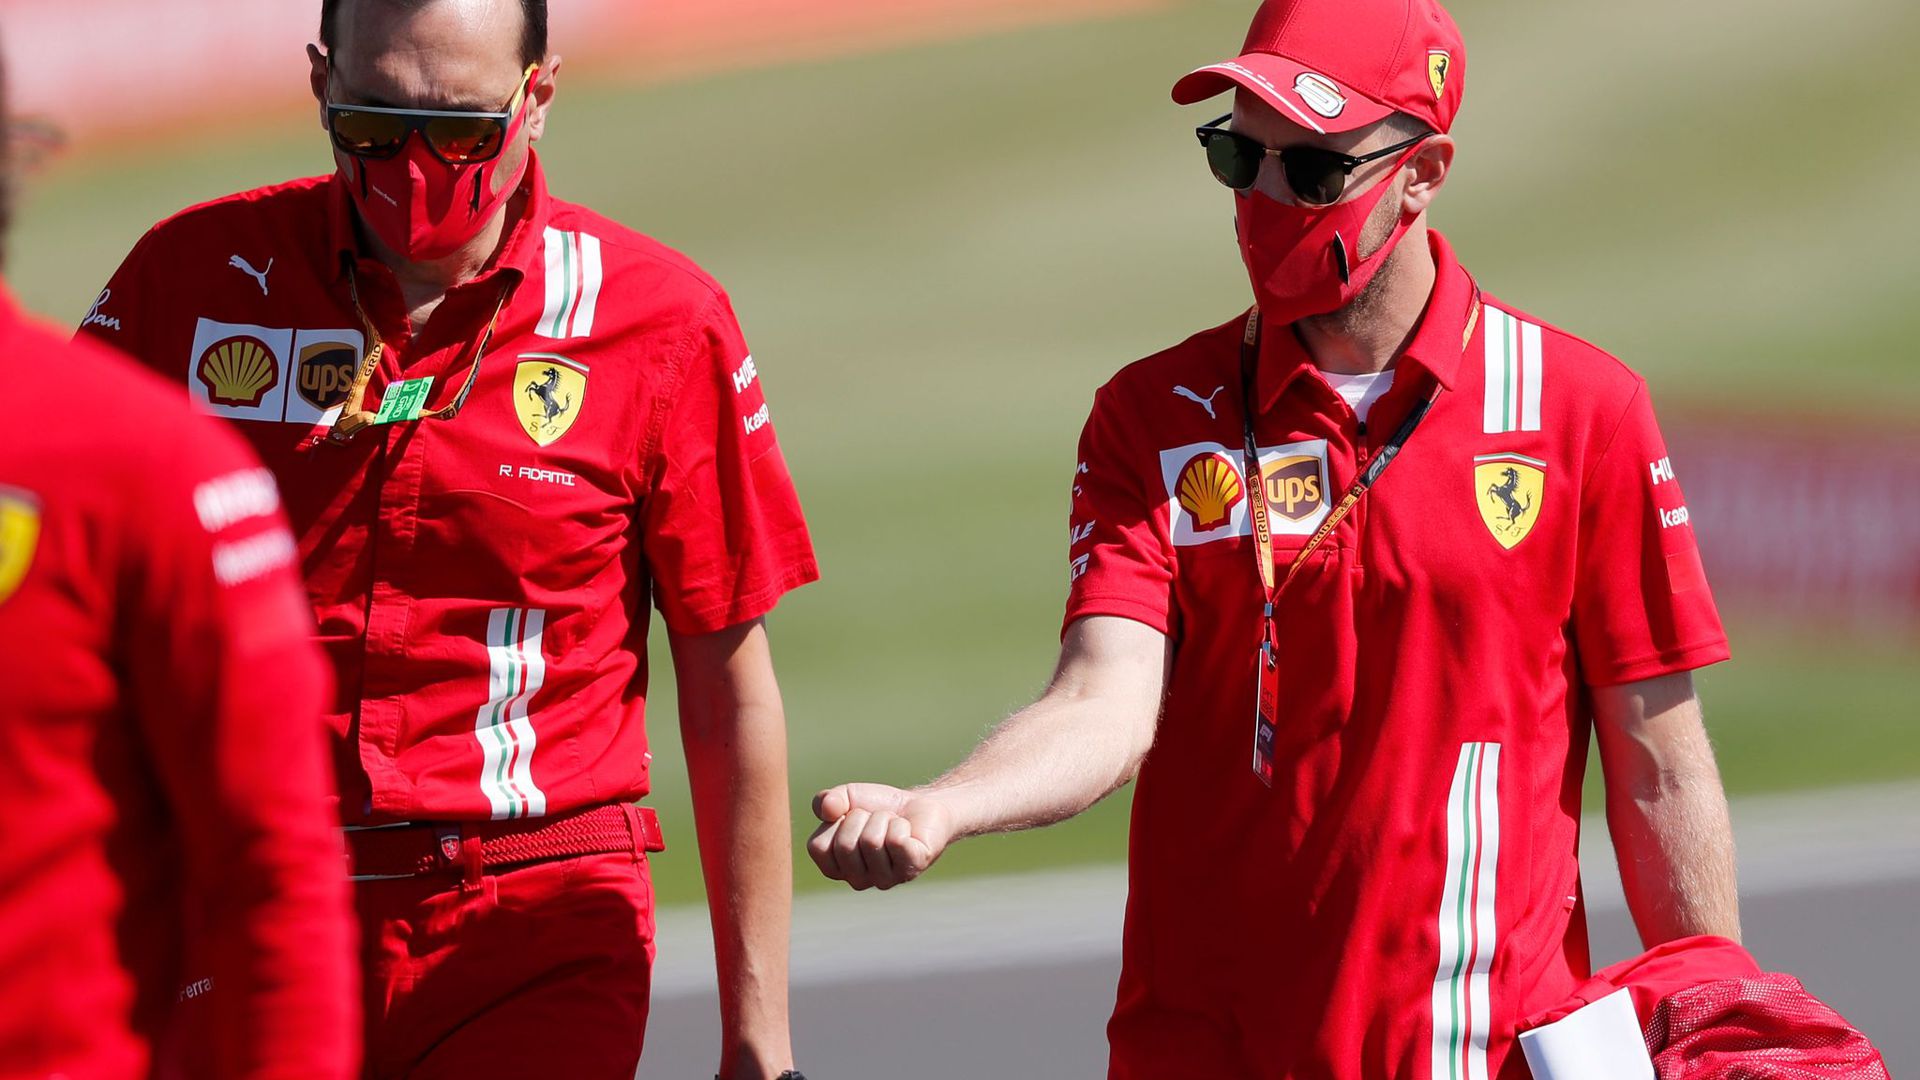 Hat es in Sachen Zukunft nicht eilig: Ferrari-Pilot Sebastian Vettel.